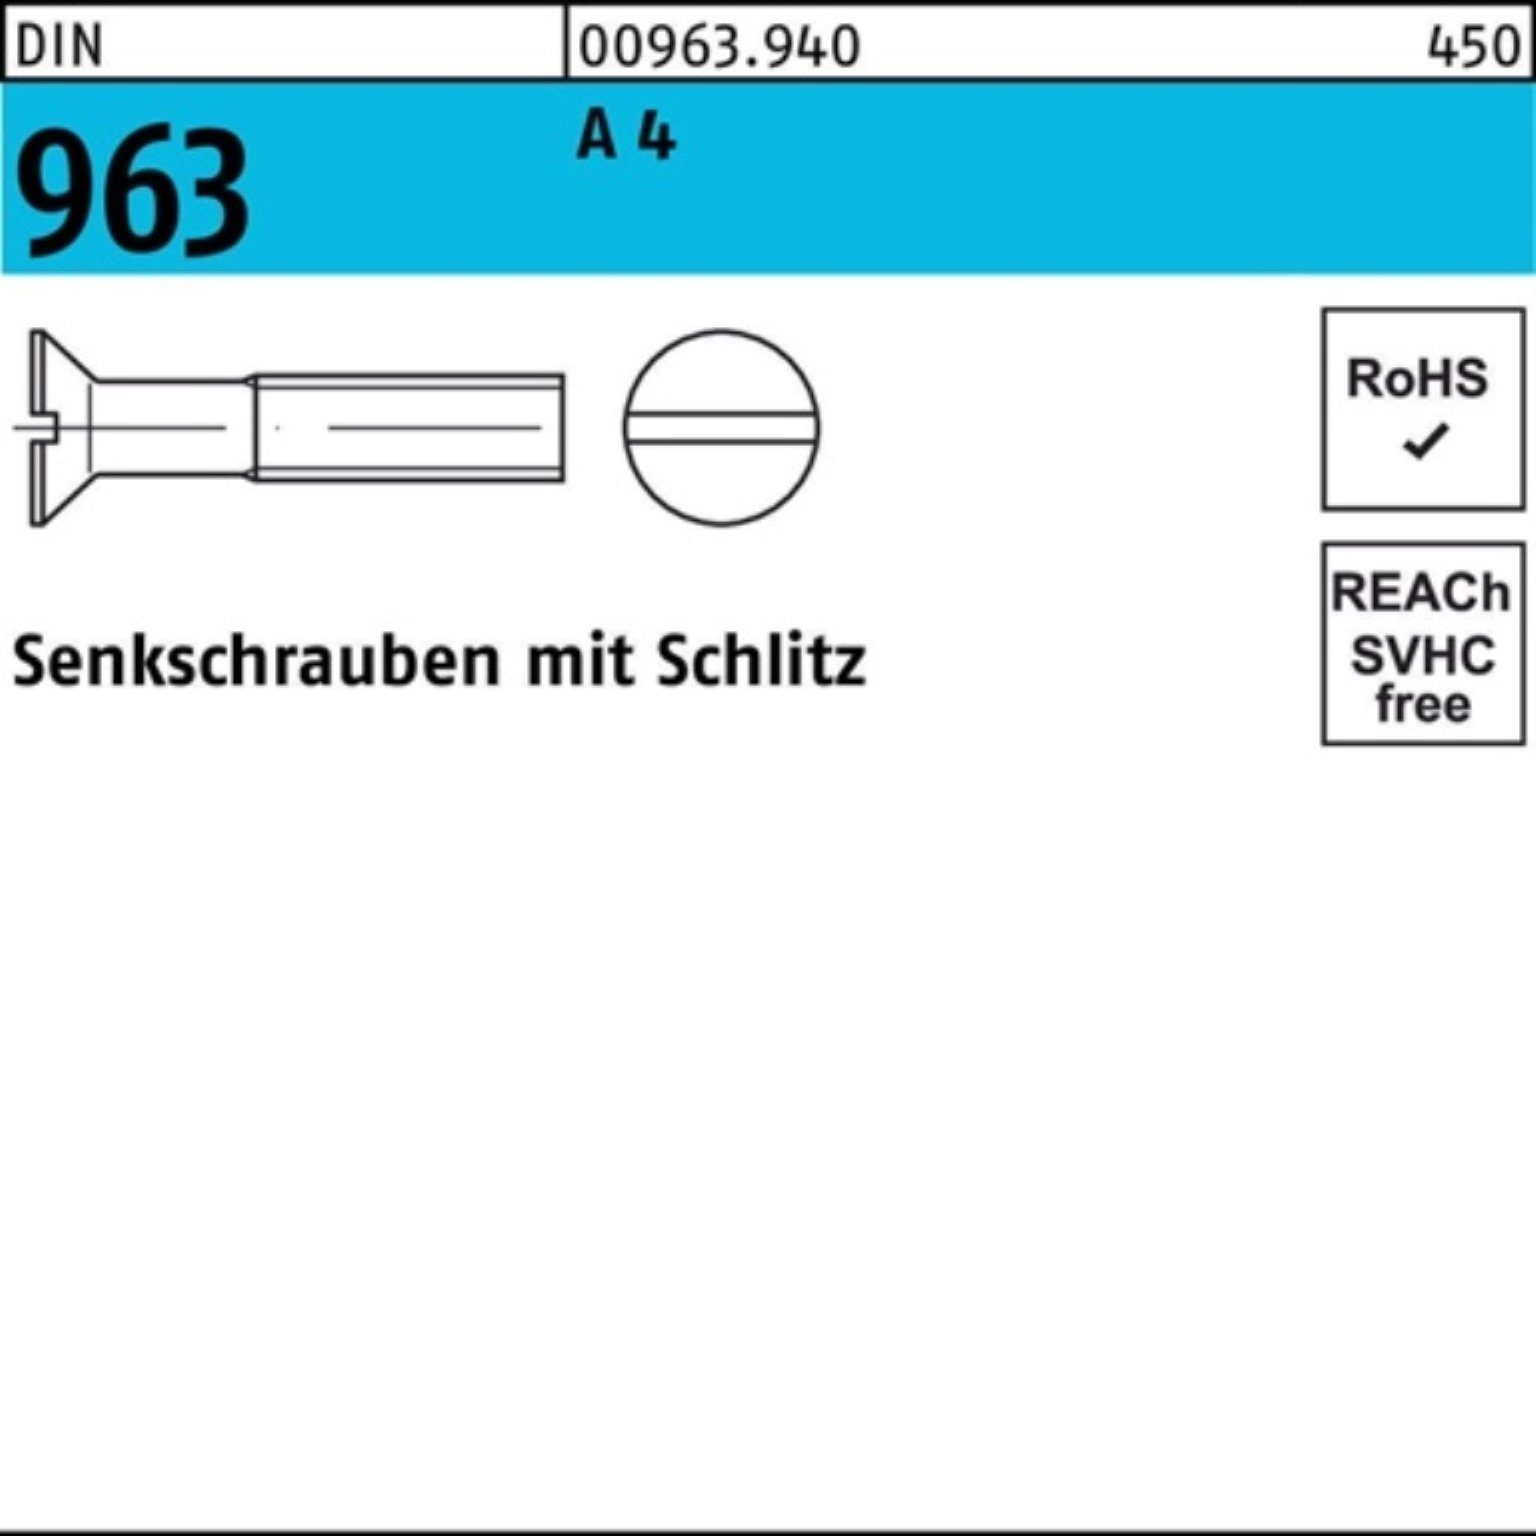 Pack Senkschraube A Stück Senkschraube 1000er Reyher M3x 96 Schlitz 1000 12 DIN DIN 4 963